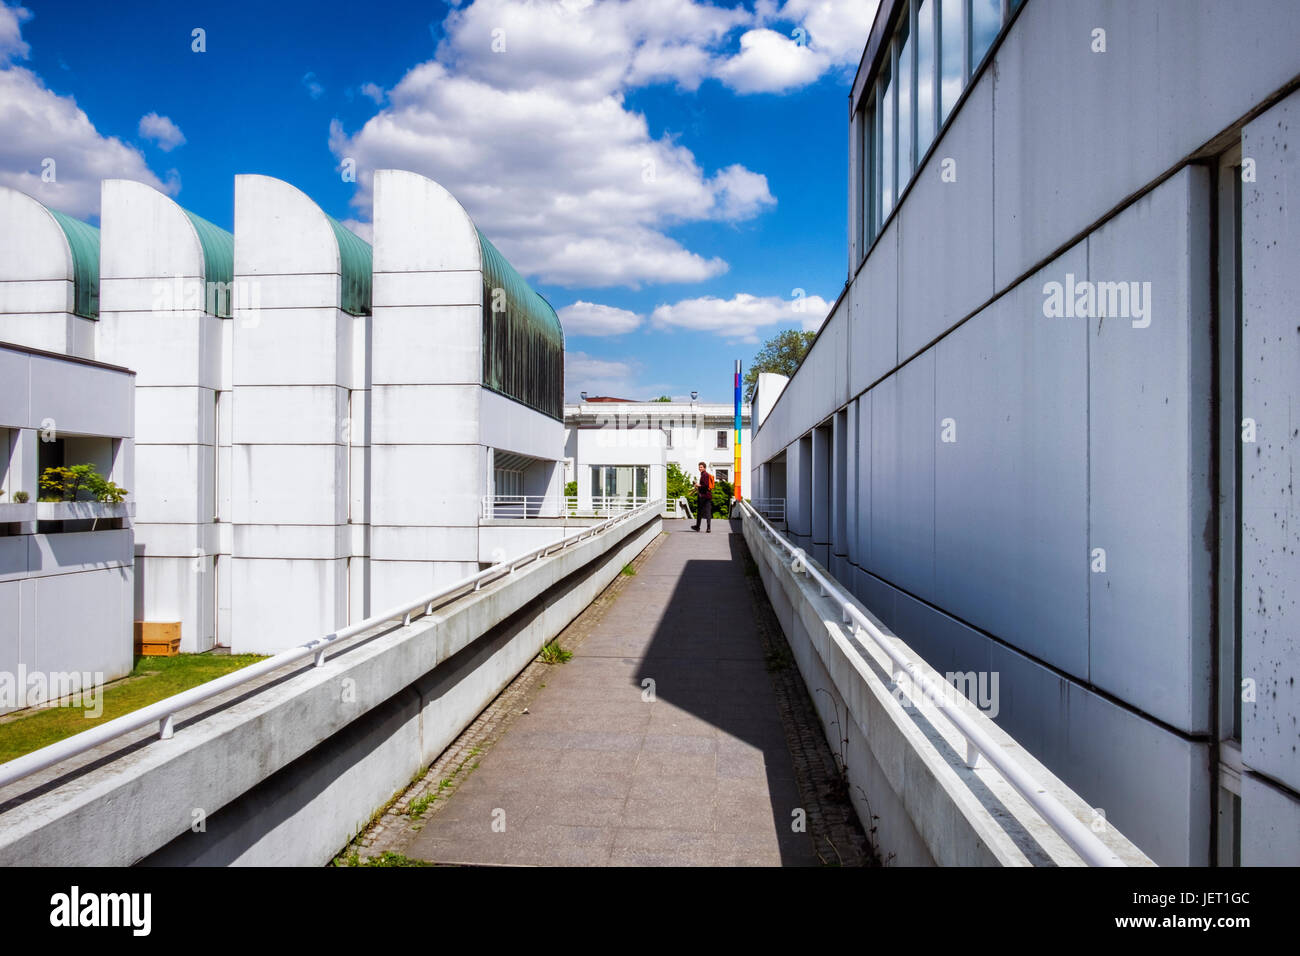 Berlino,Tiergarten.L'edificio Bauhaus, Archivio Bauhaus,Museo del design è un centro di documentazione con spazi per esposizioni progettato da Walter Gropius Foto Stock